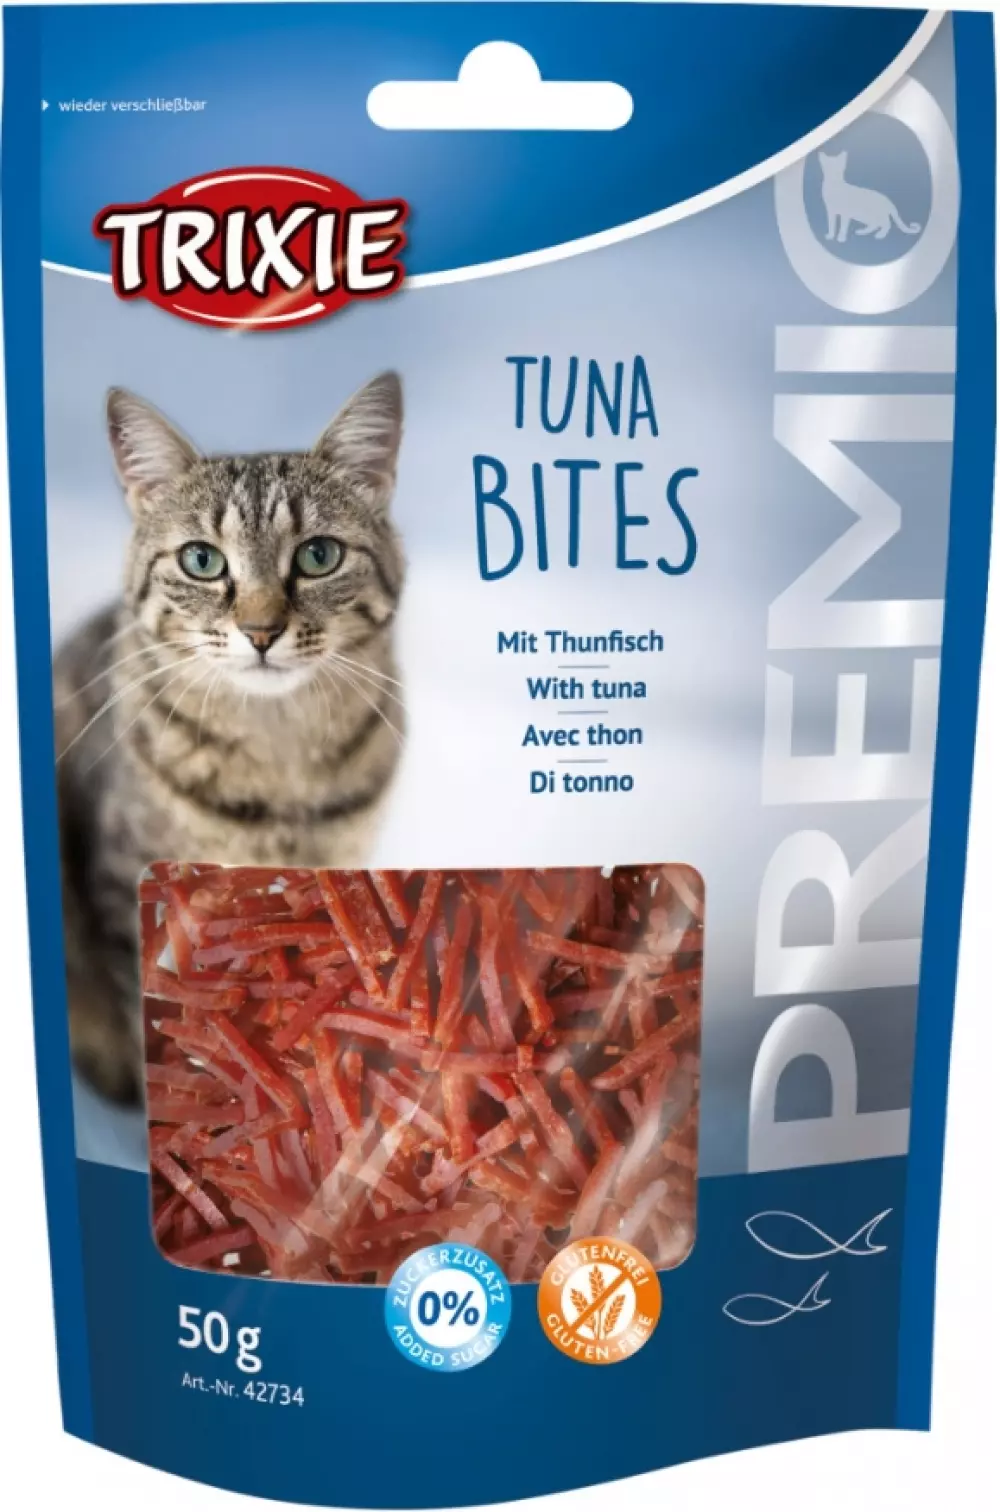 Tuna bites 50gr, katt, Trixie, 4011905427348, Katteutstyr, Kattegodbiter, Trixie, Eldorado, PREMIO Tuna Bites, 50 g